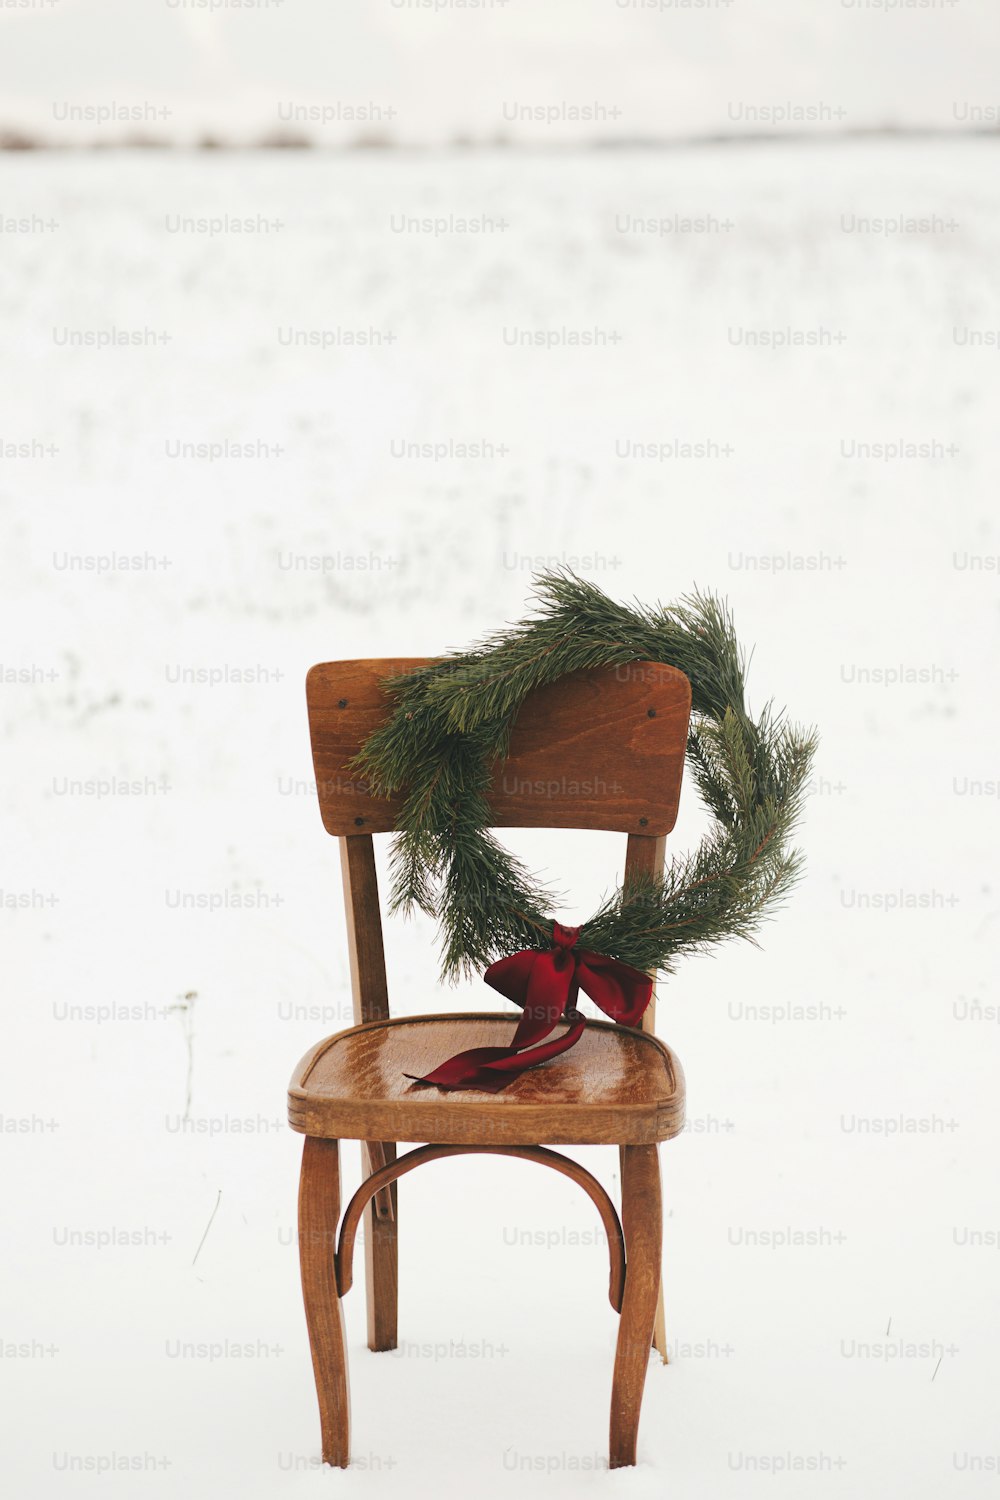 Feliz Natal! Coroa de Natal na cadeira rústica no campo de inverno nevado. Férias de inverno no campo. Espaço para texto. Elegante grinalda de xmas com ramos de pinho e laço vermelho pendurado na cadeira de madeira